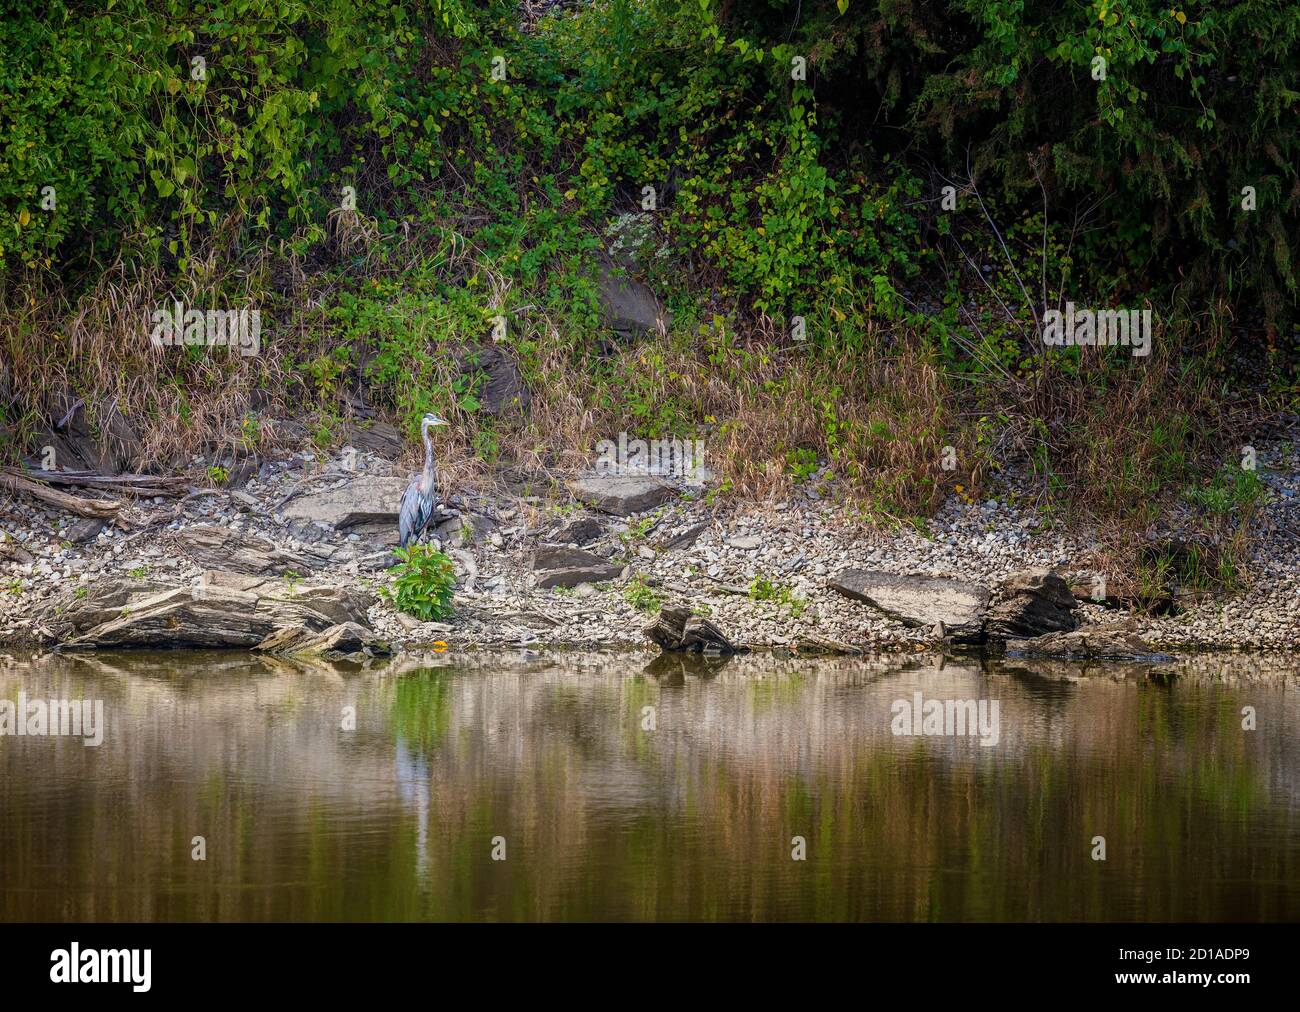 Un gran Heron Azul se alza sobre el borde de las aguas que se mezclan en el entorno natural. Foto de stock